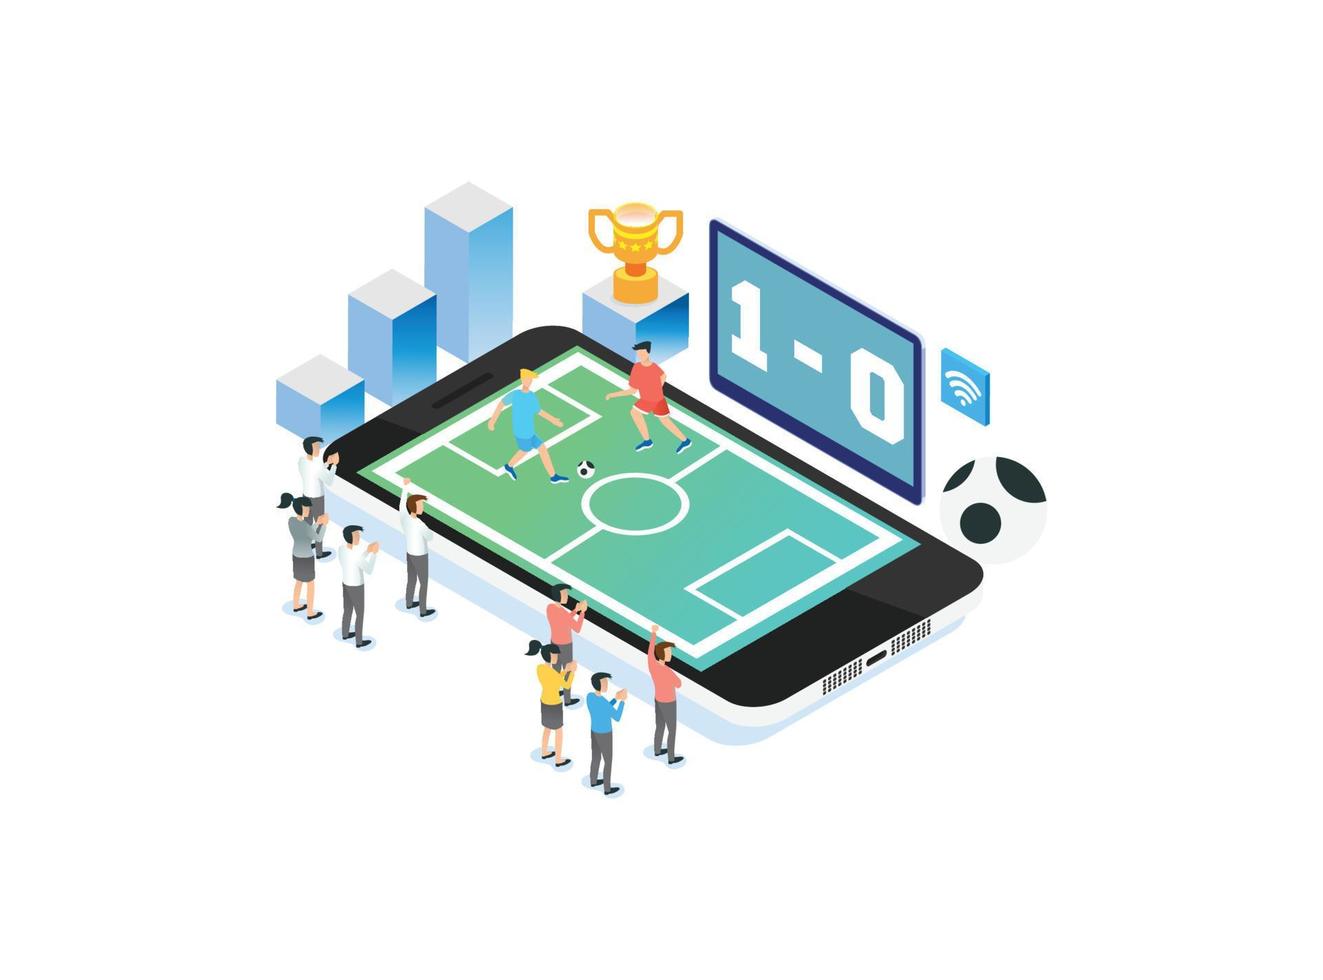 ilustración de tecnología de fútbol en vivo en línea inteligente isométrica 3d moderna en fondo blanco aislado con personas y activos digitales relacionados vector